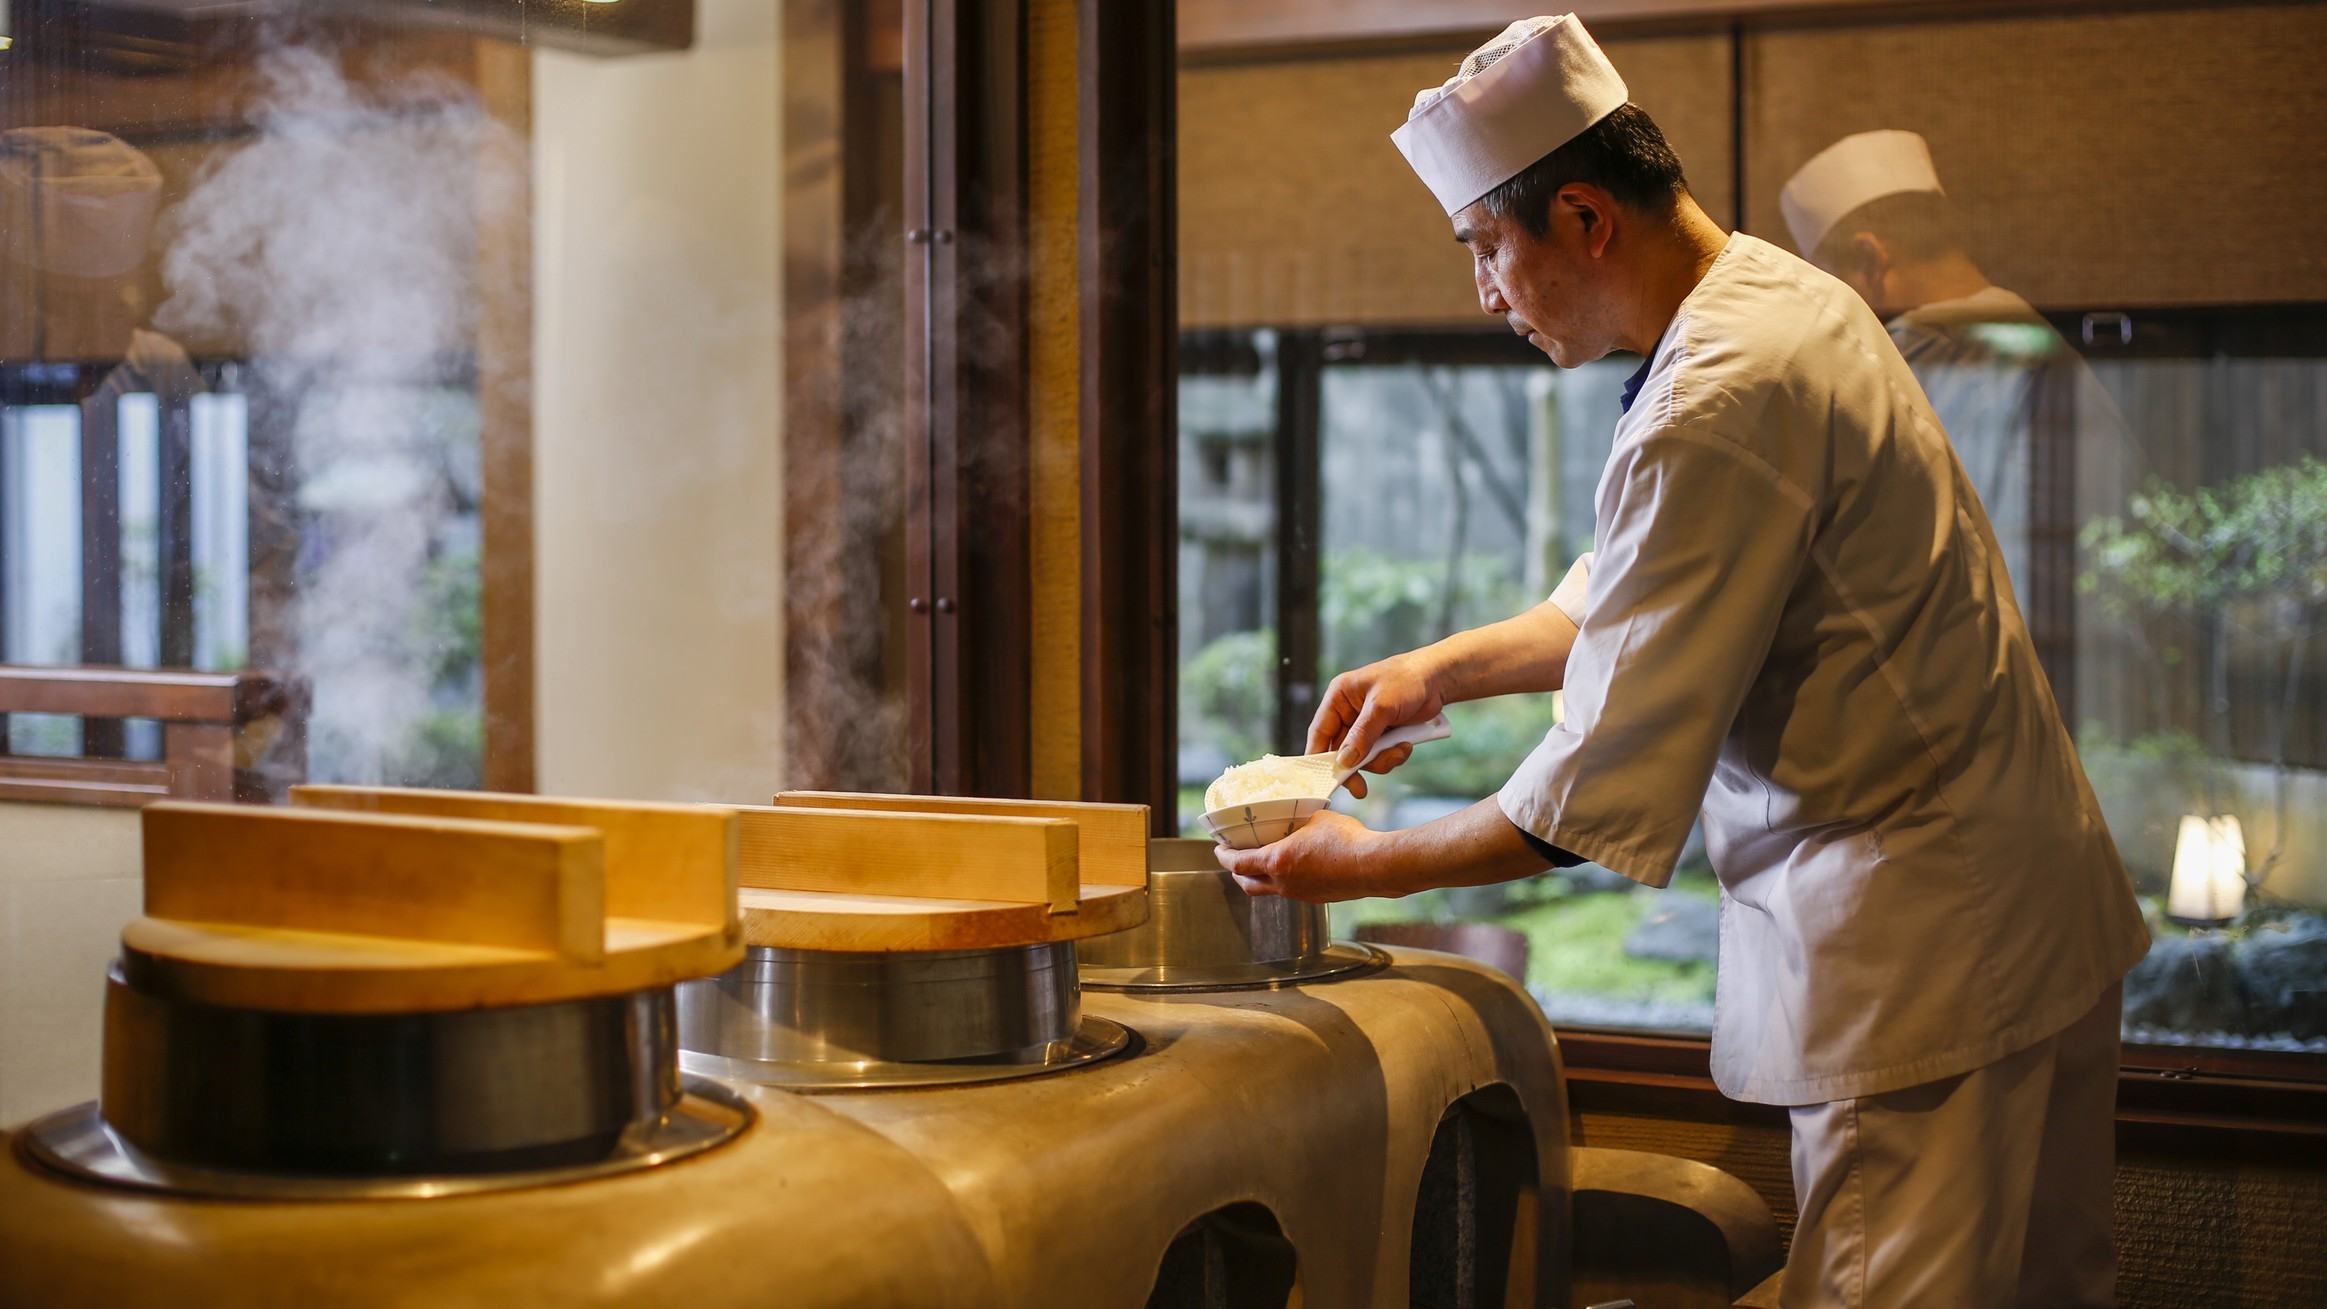 【食でめぐる奈良】-興福寺の鐘の音で目覚める朝-　最強かまどごはんと大和のお茶粥付き和定食/朝食付